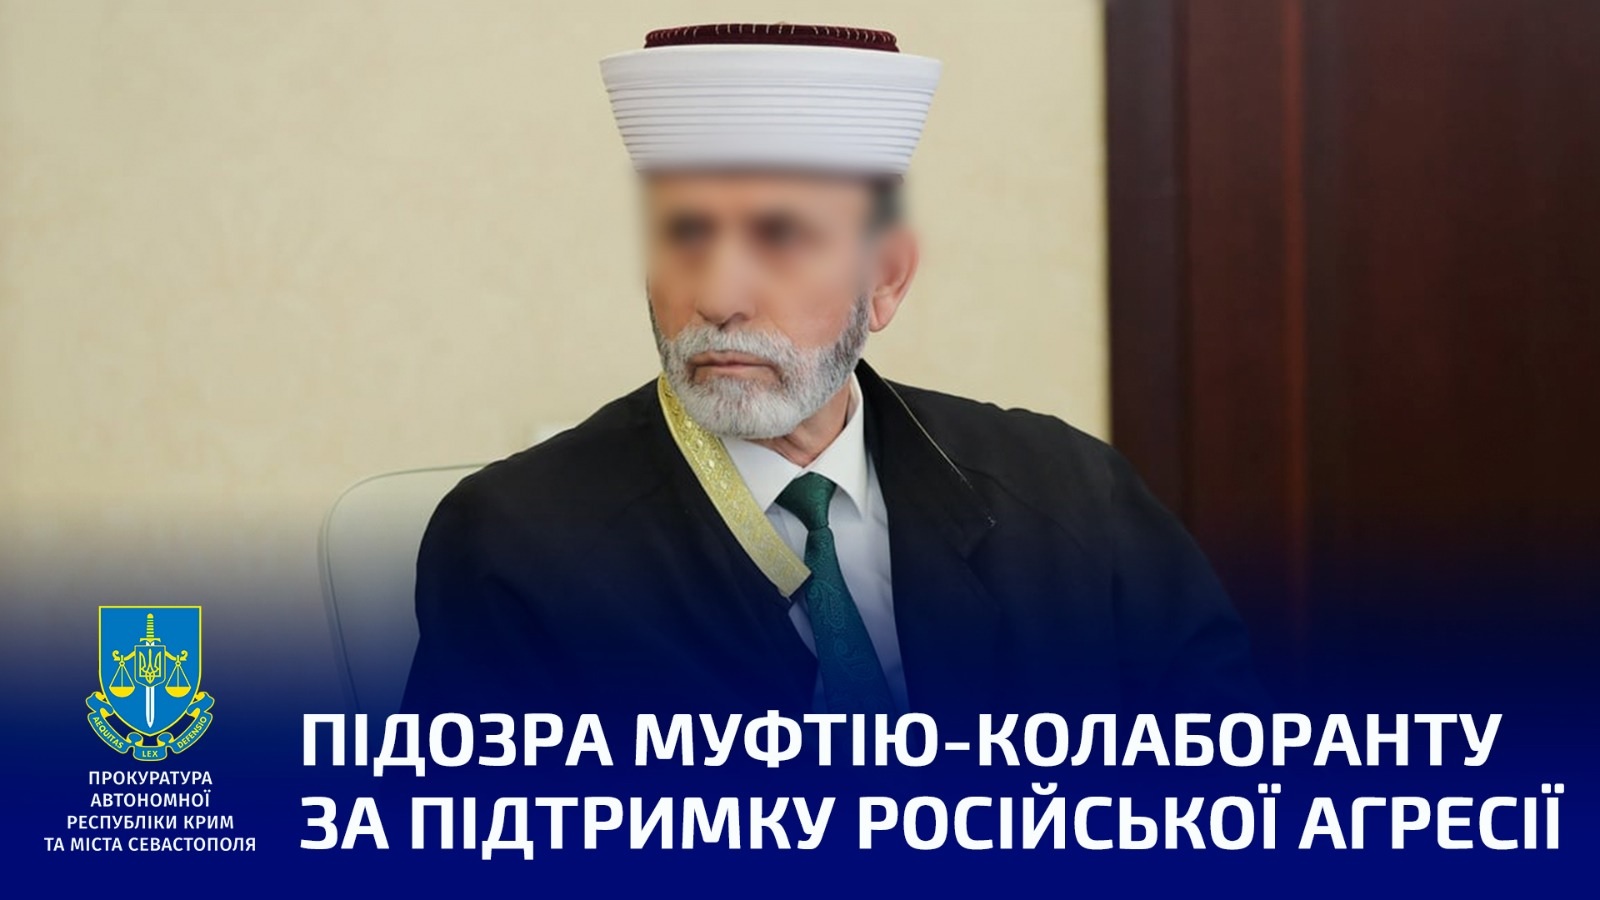 Украинская прокуратура обвиняет пророссийского муфтия Крыма